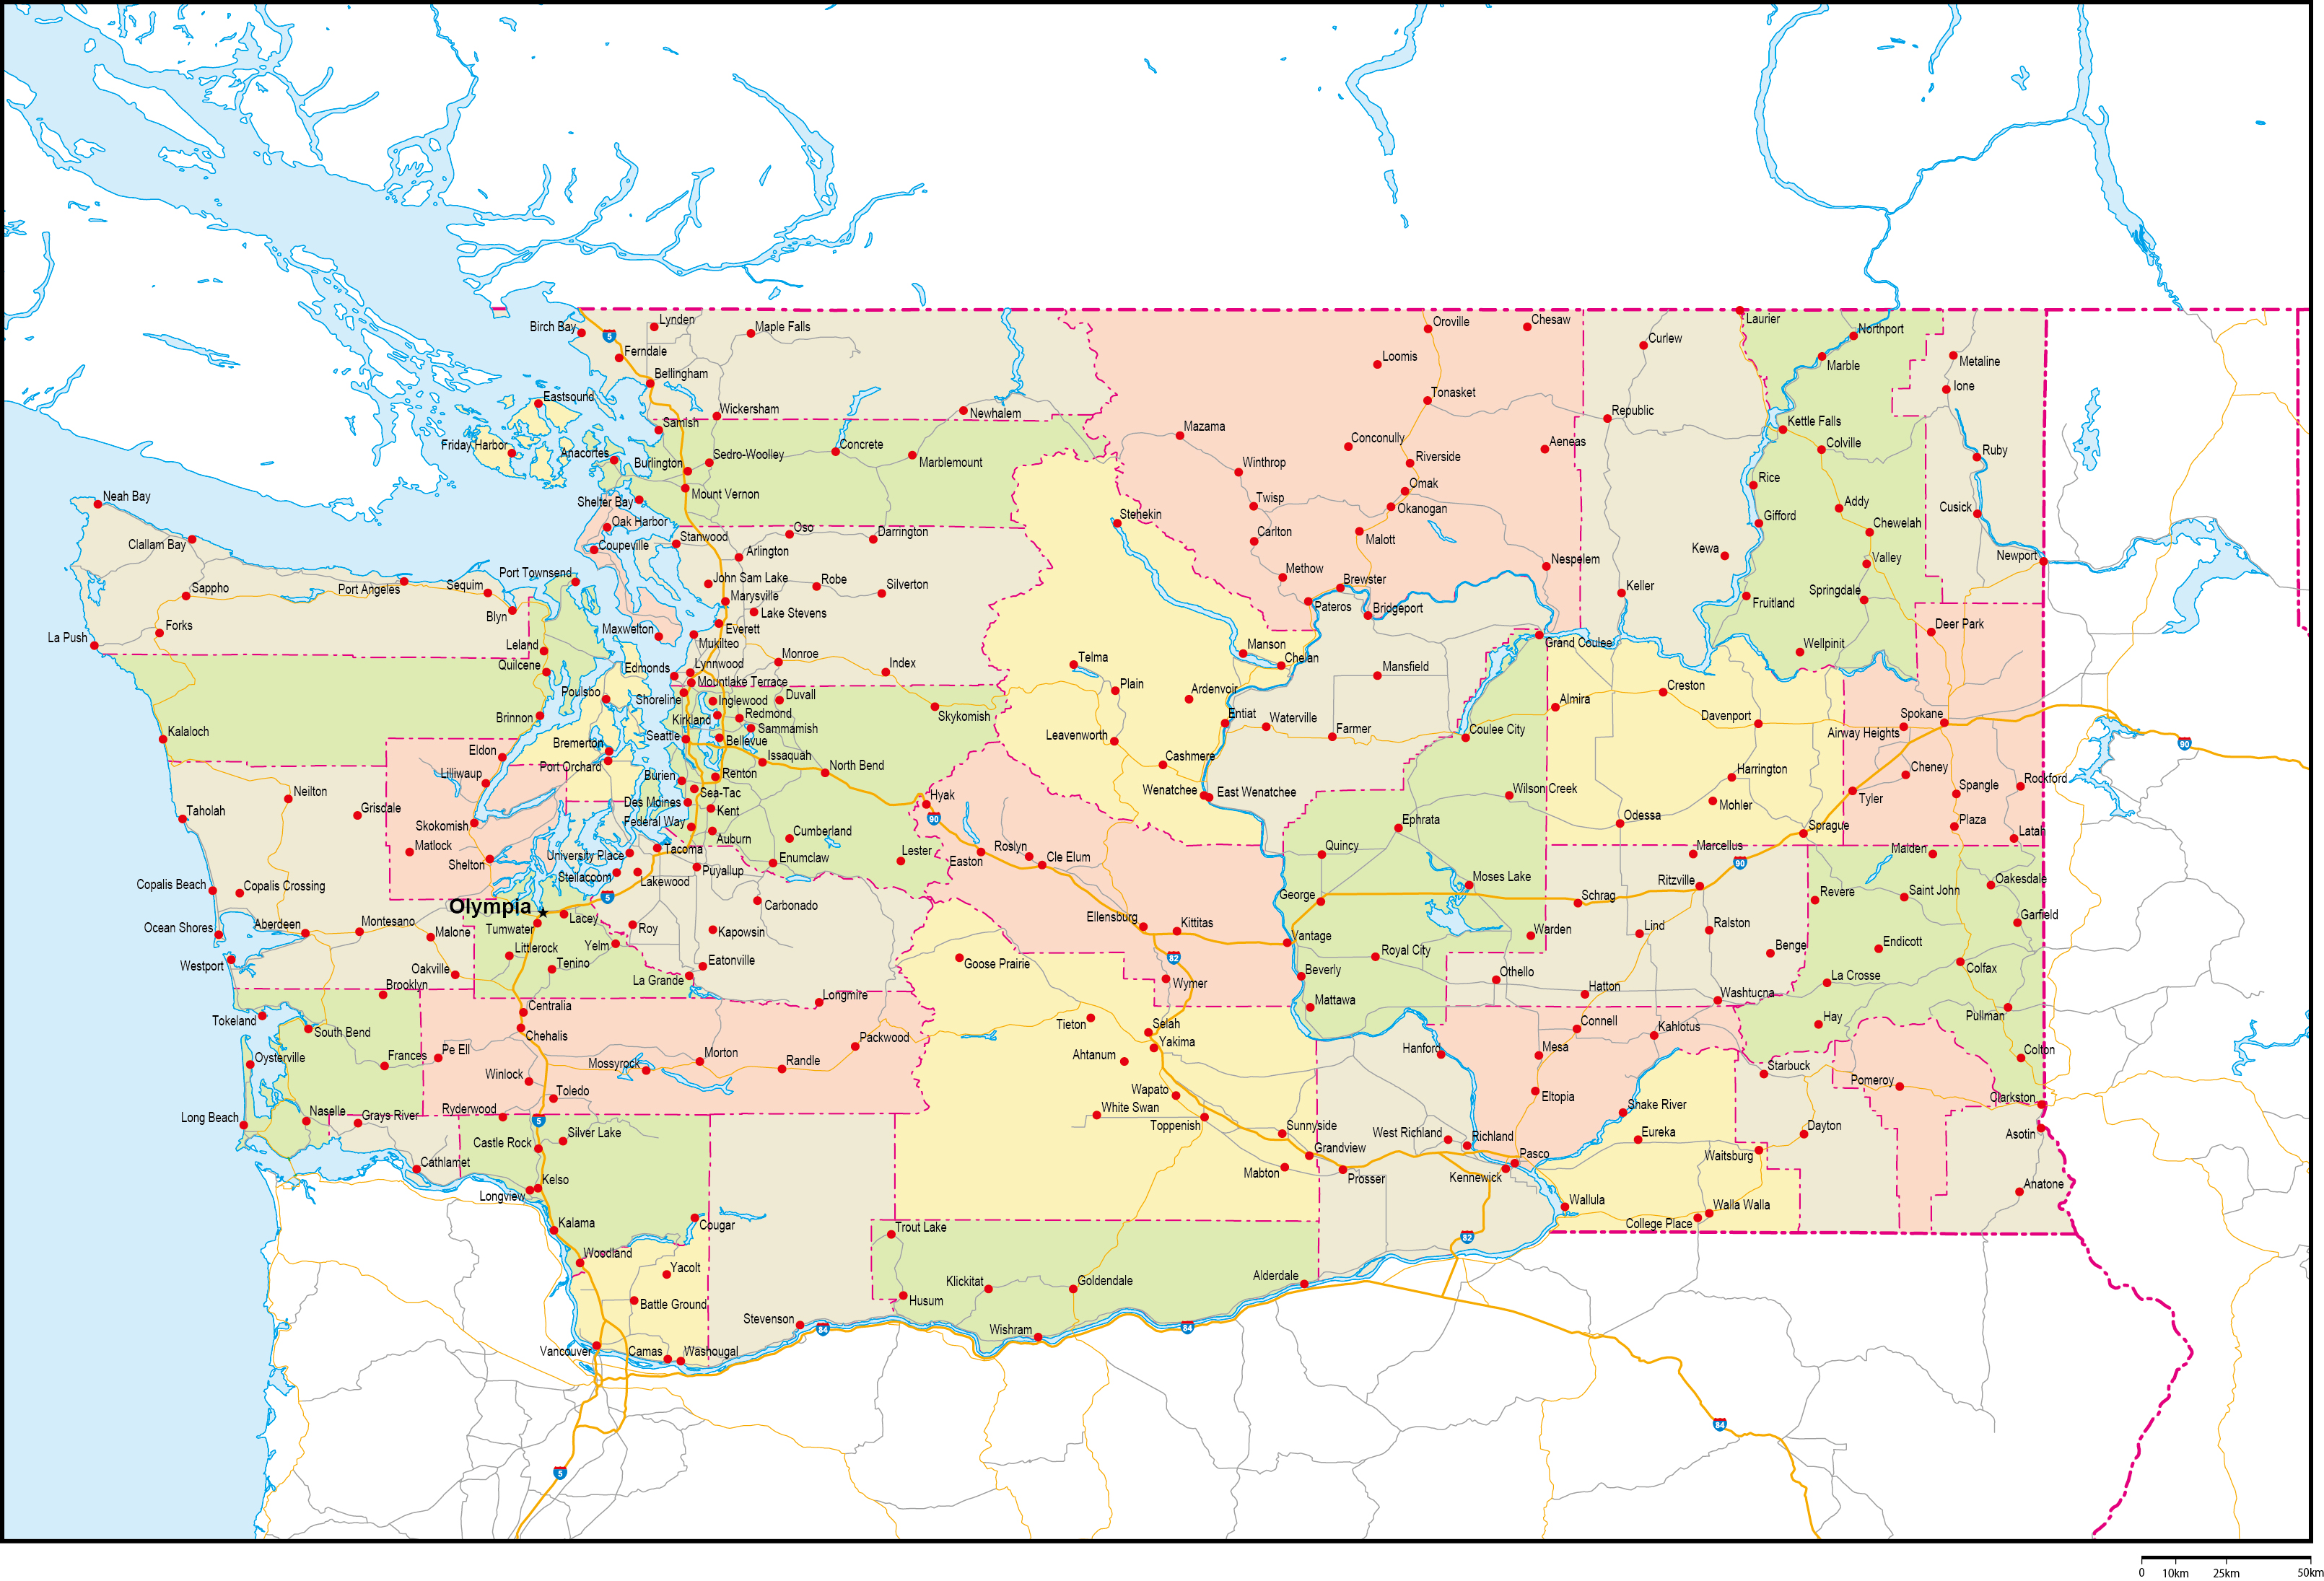 ワシントン州郡色分け地図州都・主な都市・道路あり(英語)フリーデータの画像